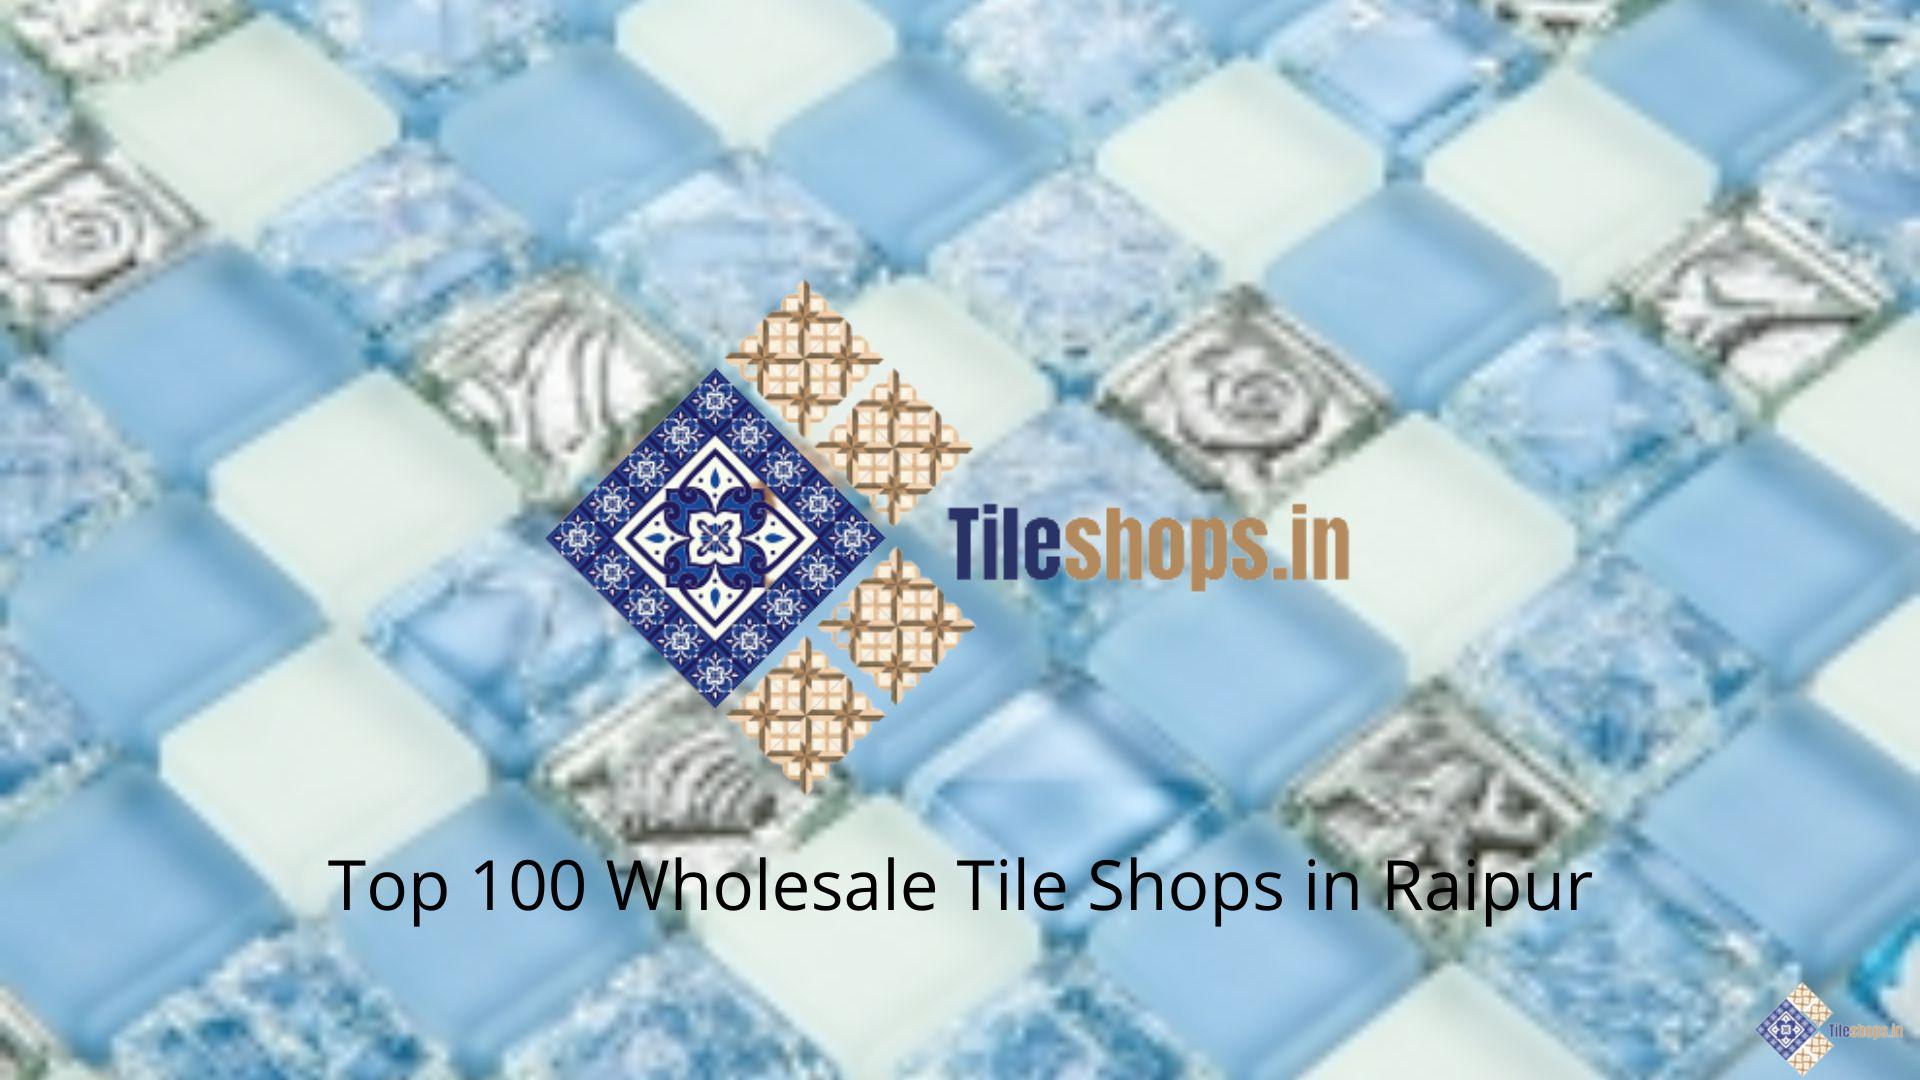 Top 100 Wholesale Tile Shops in Raipur